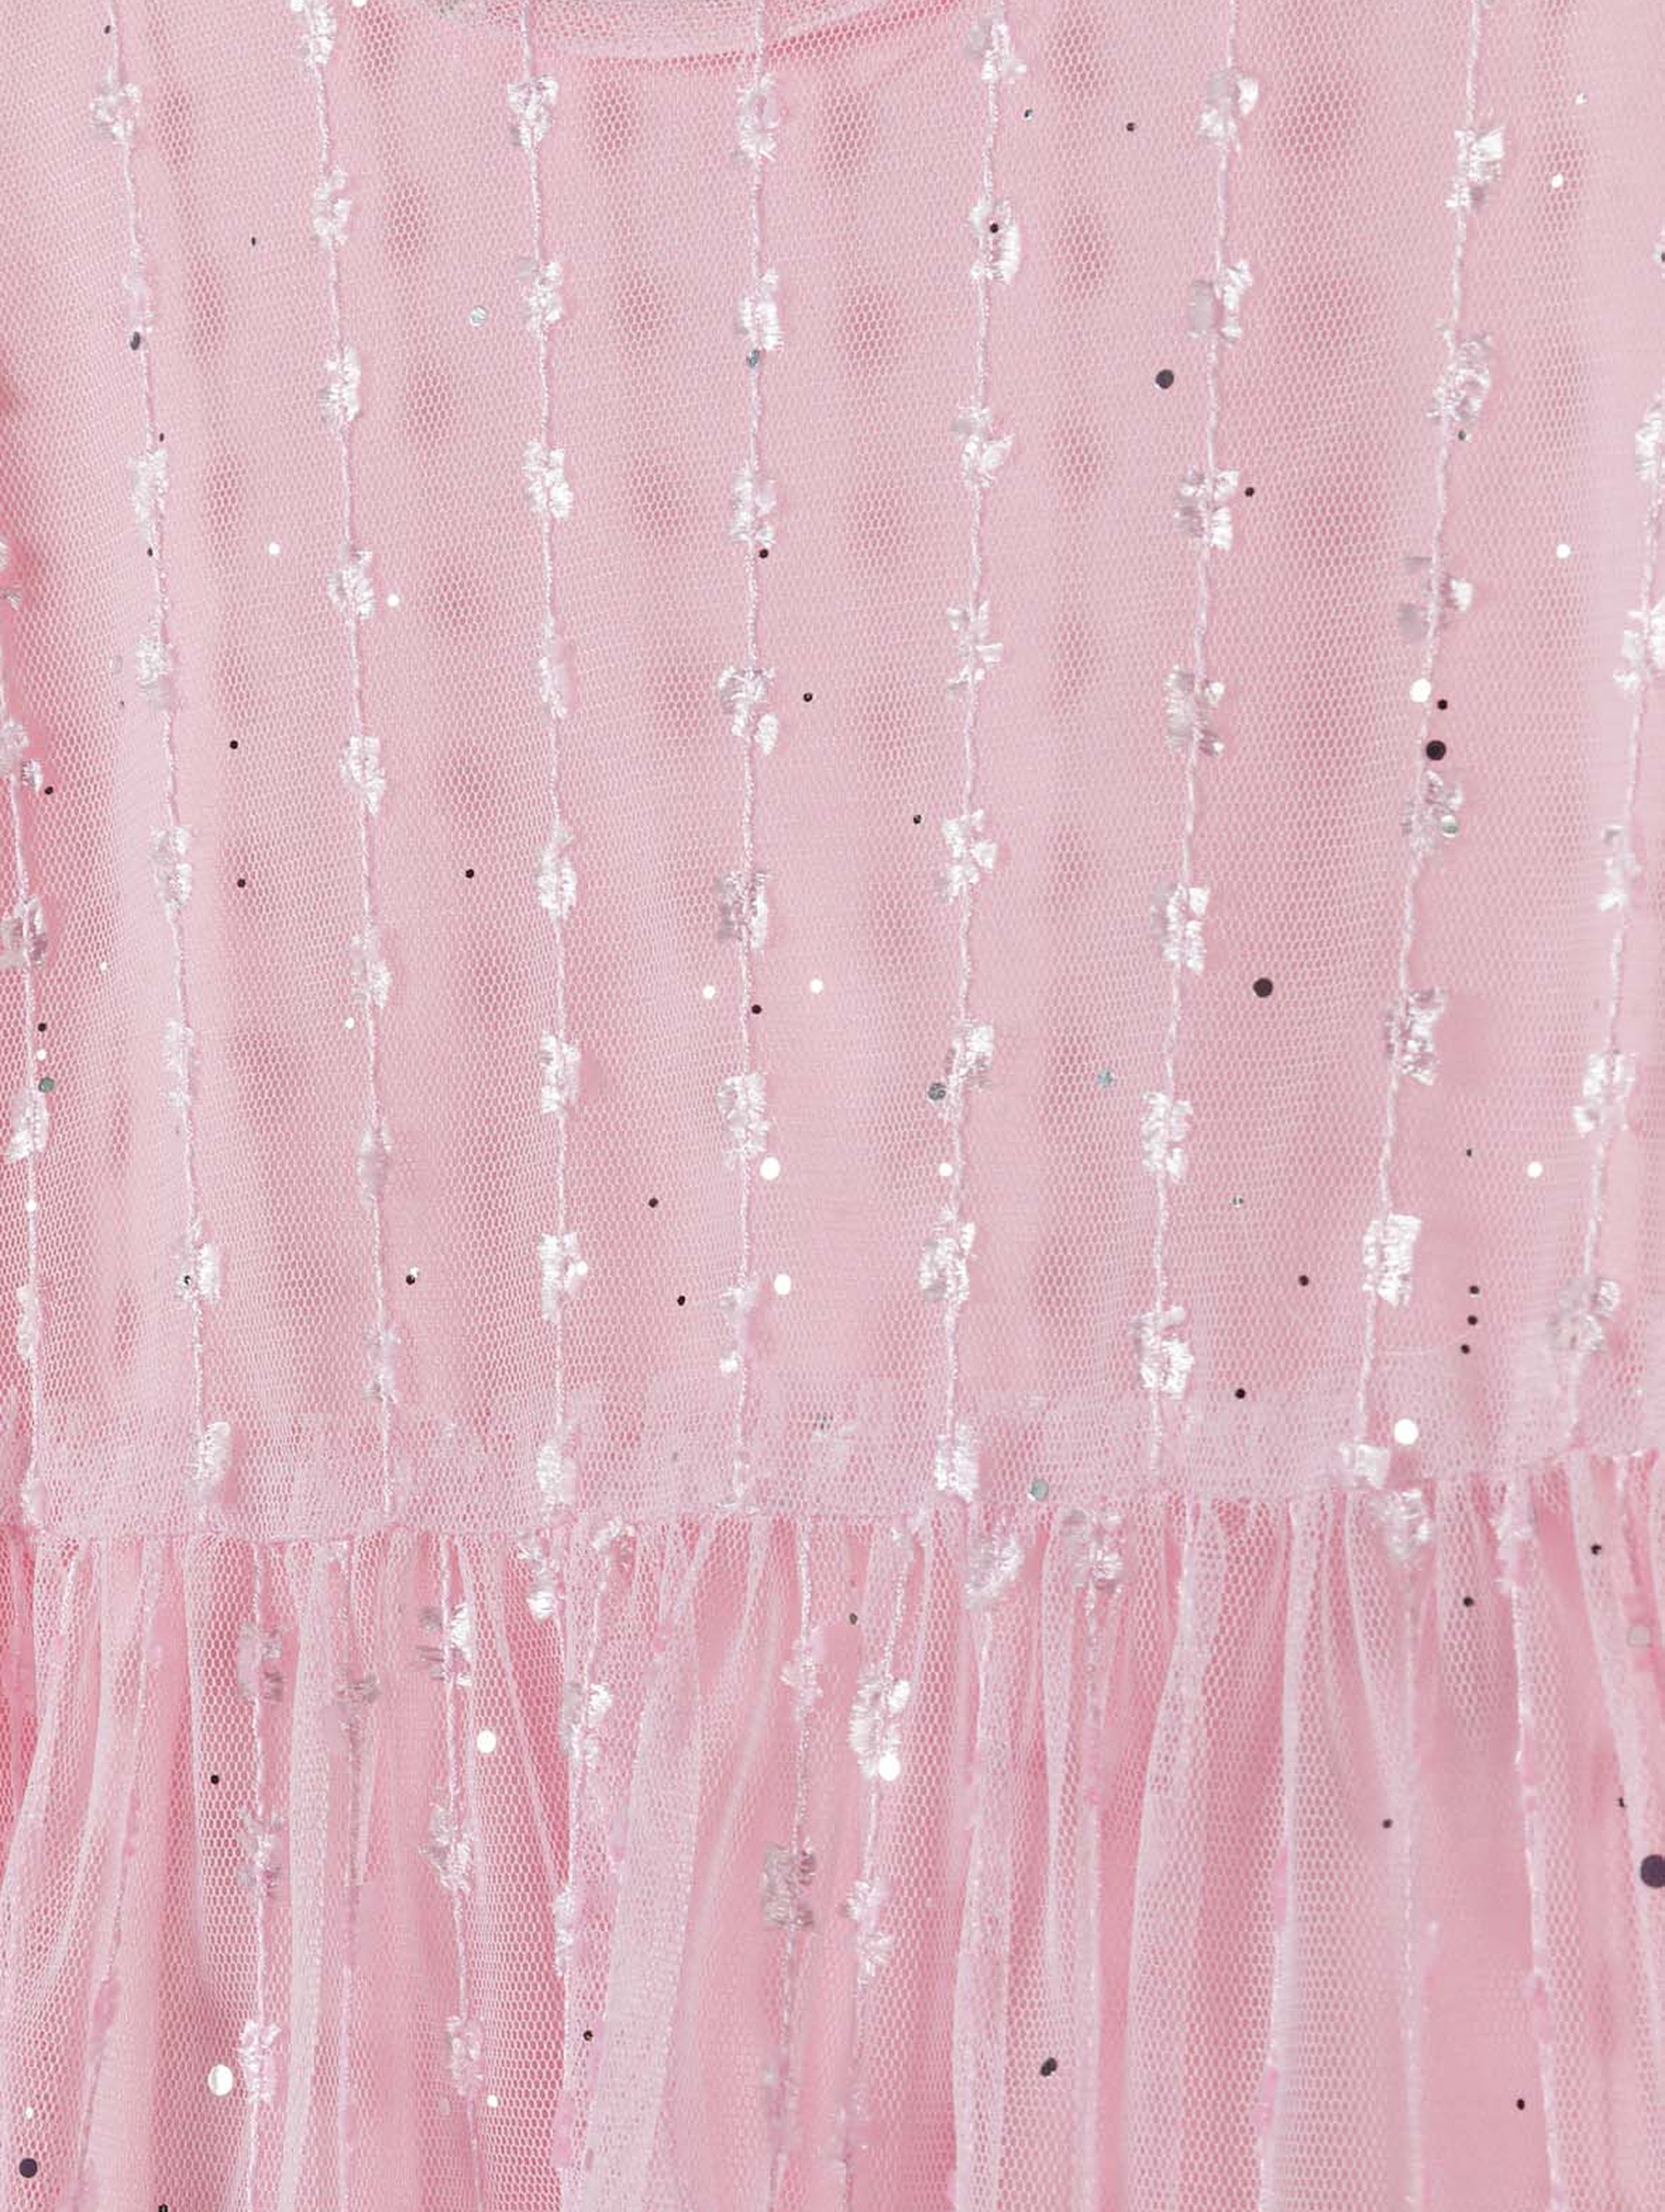 Różowa tiulowa sukienka z błyszczącymi elementami